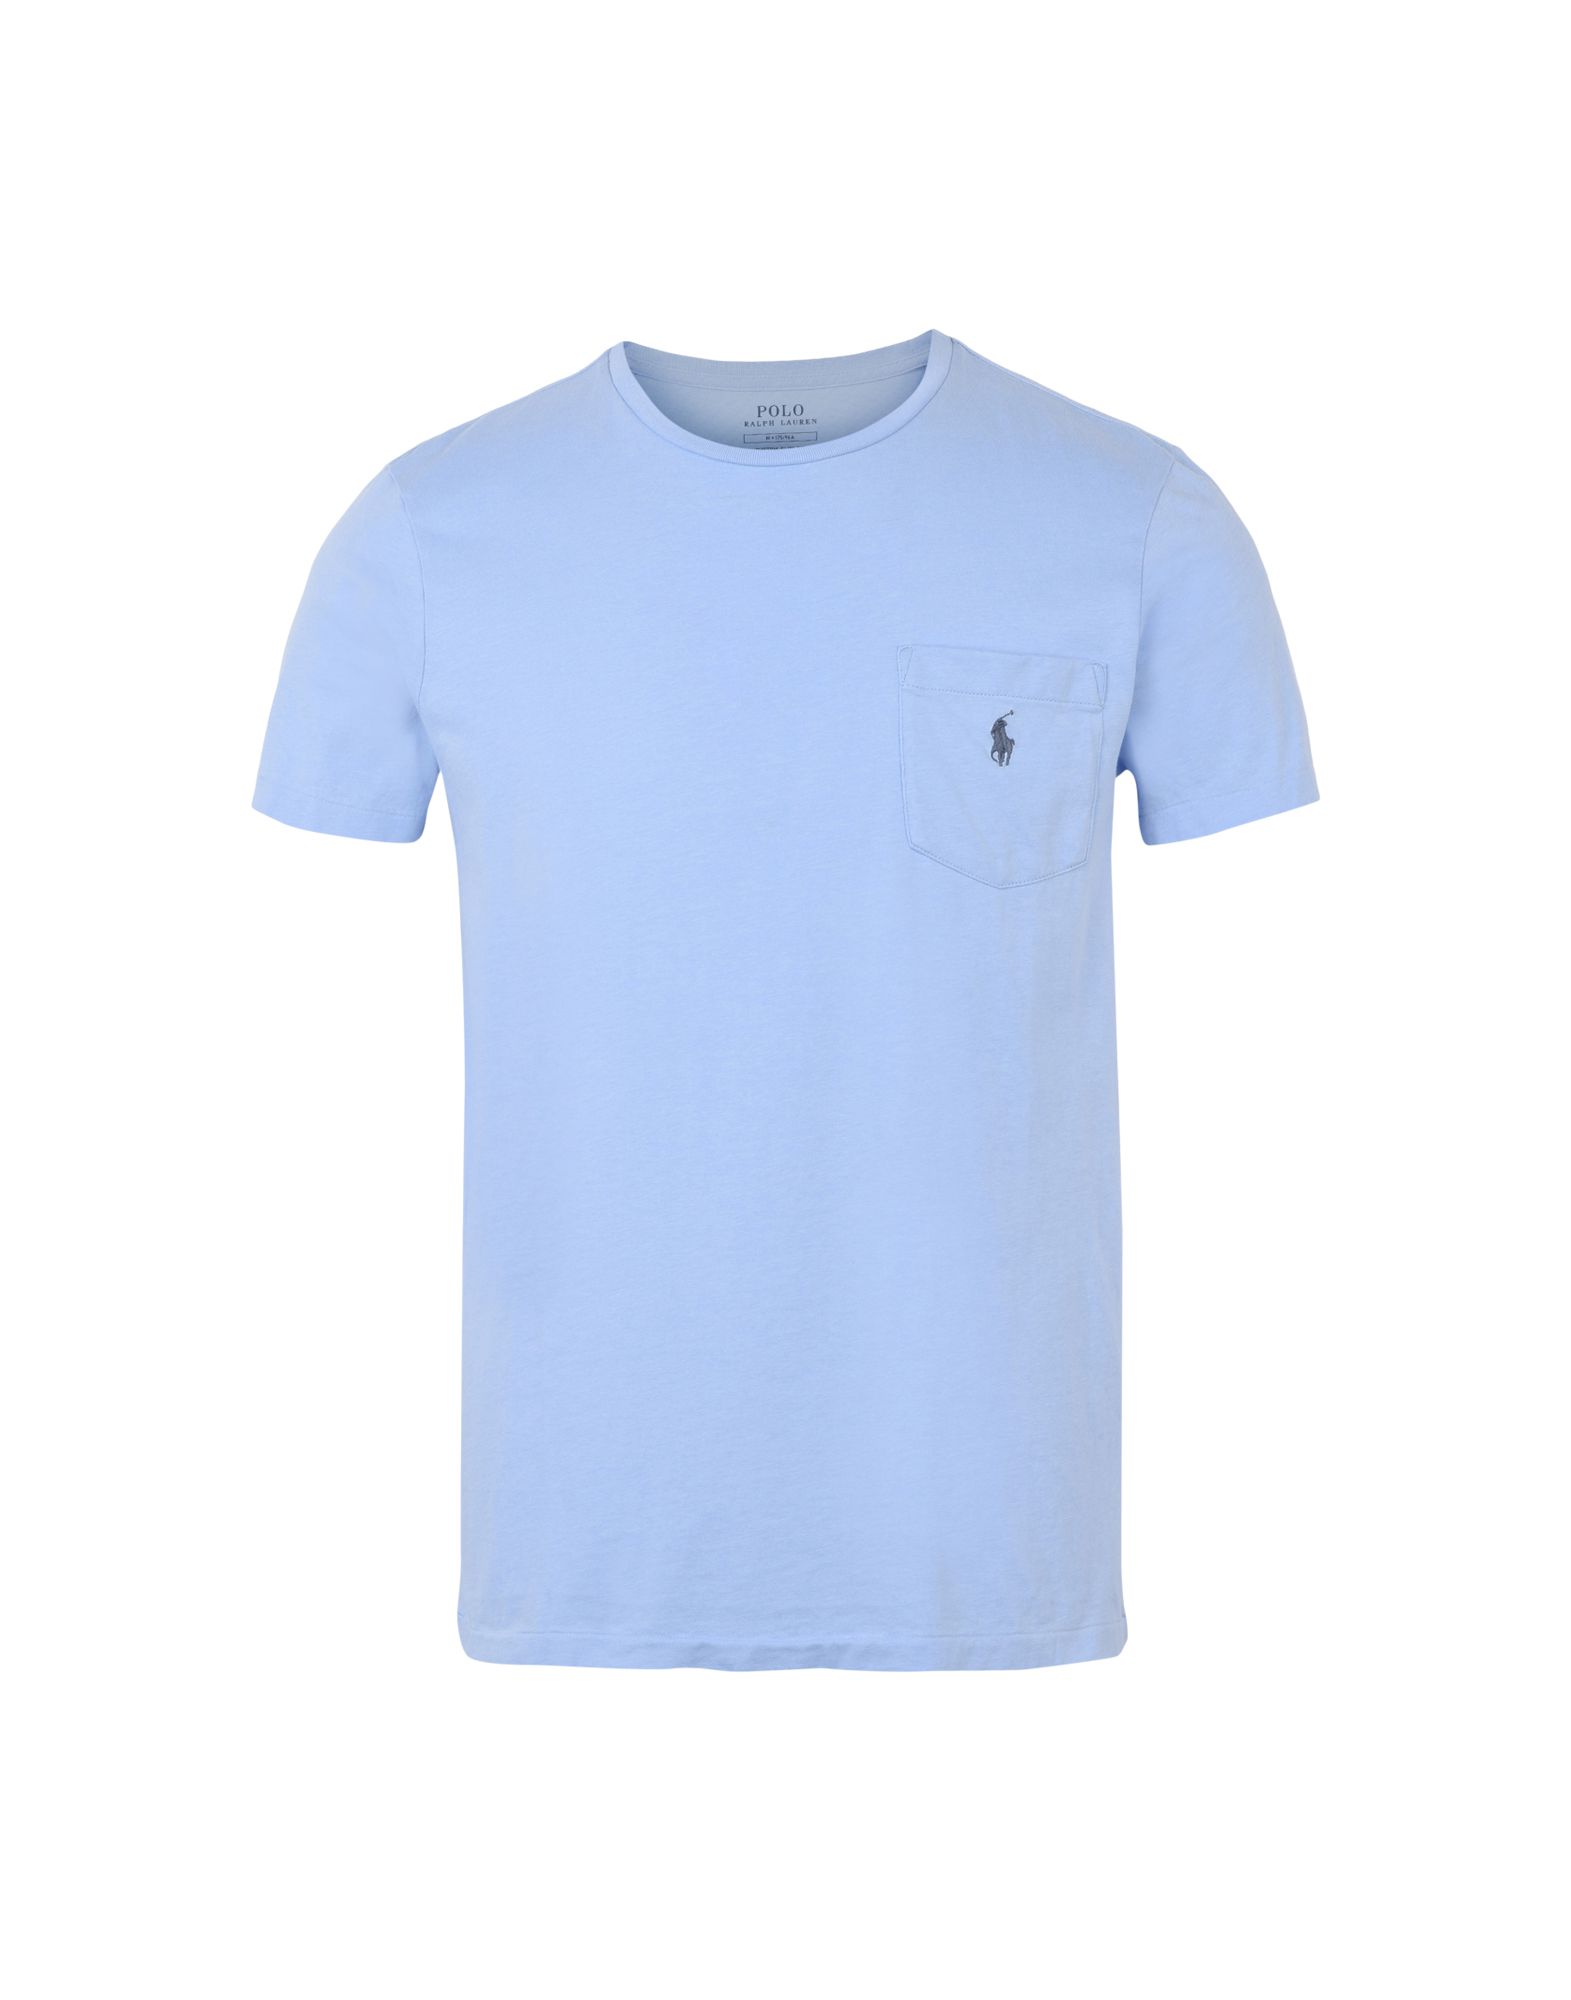 《送料無料》POLO RALPH LAUREN メンズ T シャツ アジュールブルー S コットン 100% Custom Fit T shirt